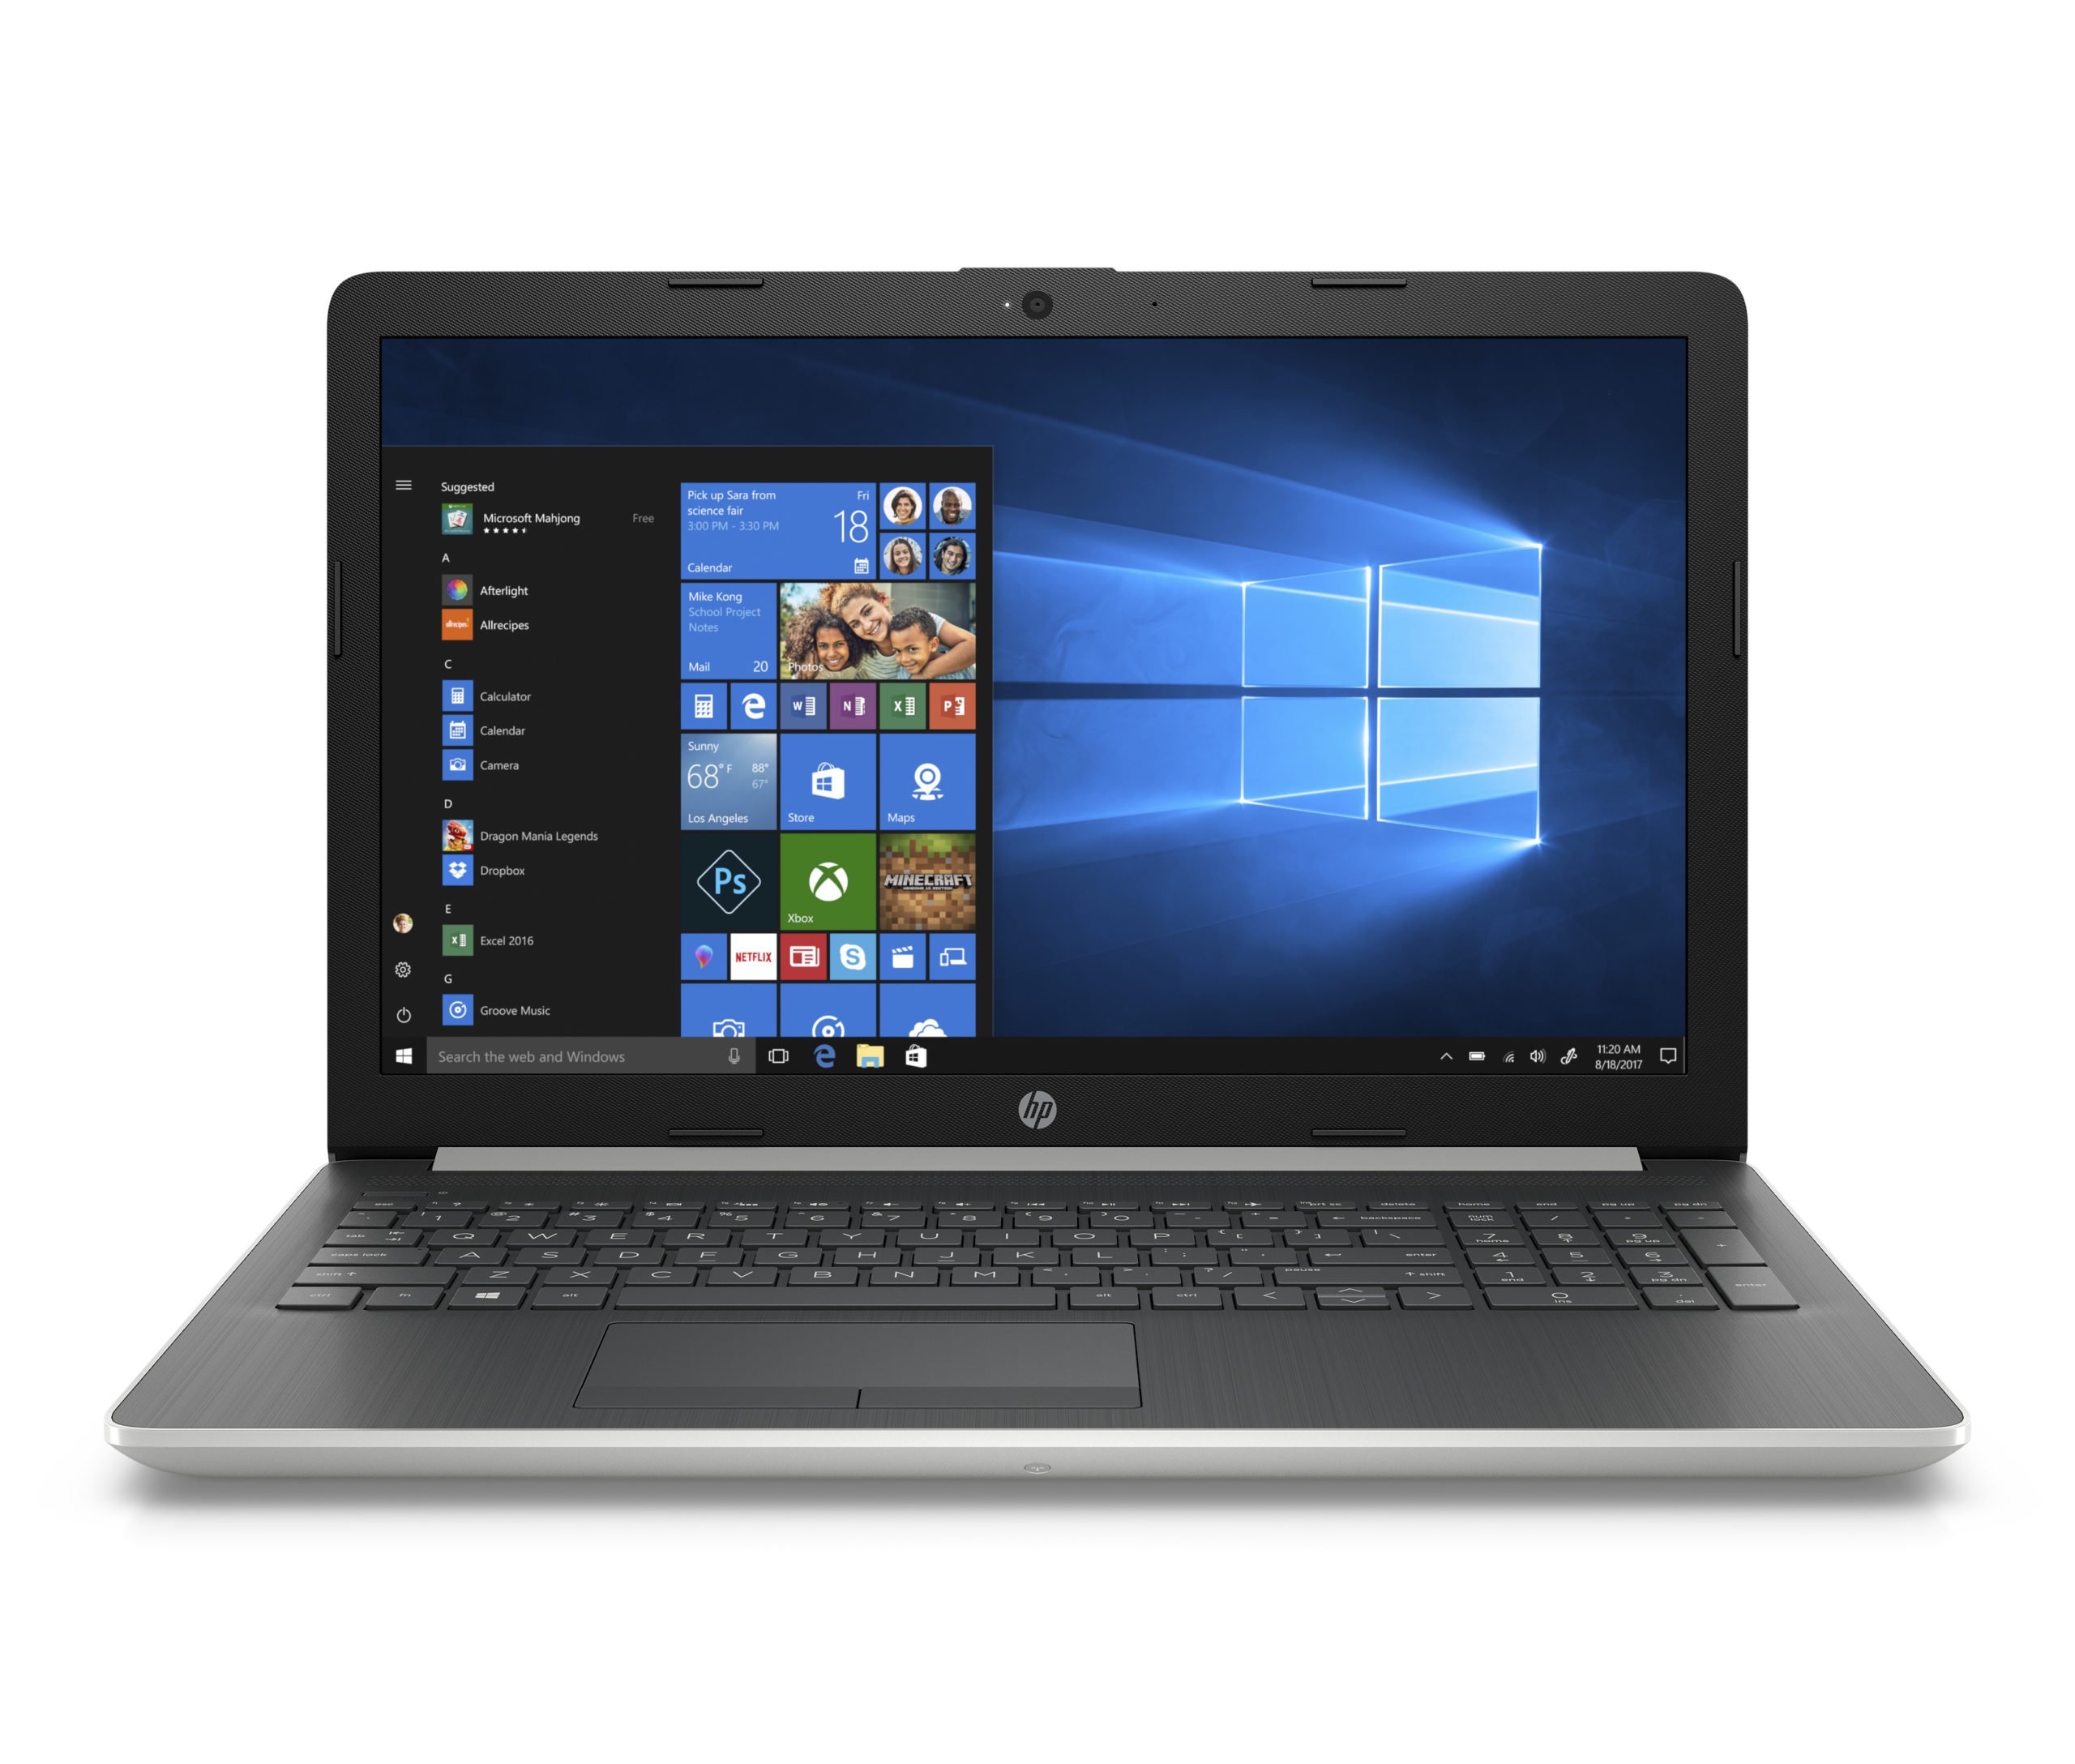 Refurbished HP 15-da0032wm 15.6" Laptop, i3-8130U 4GB RAM, 16GB Intel Optane Memory, 1TB HDD, Silver 1